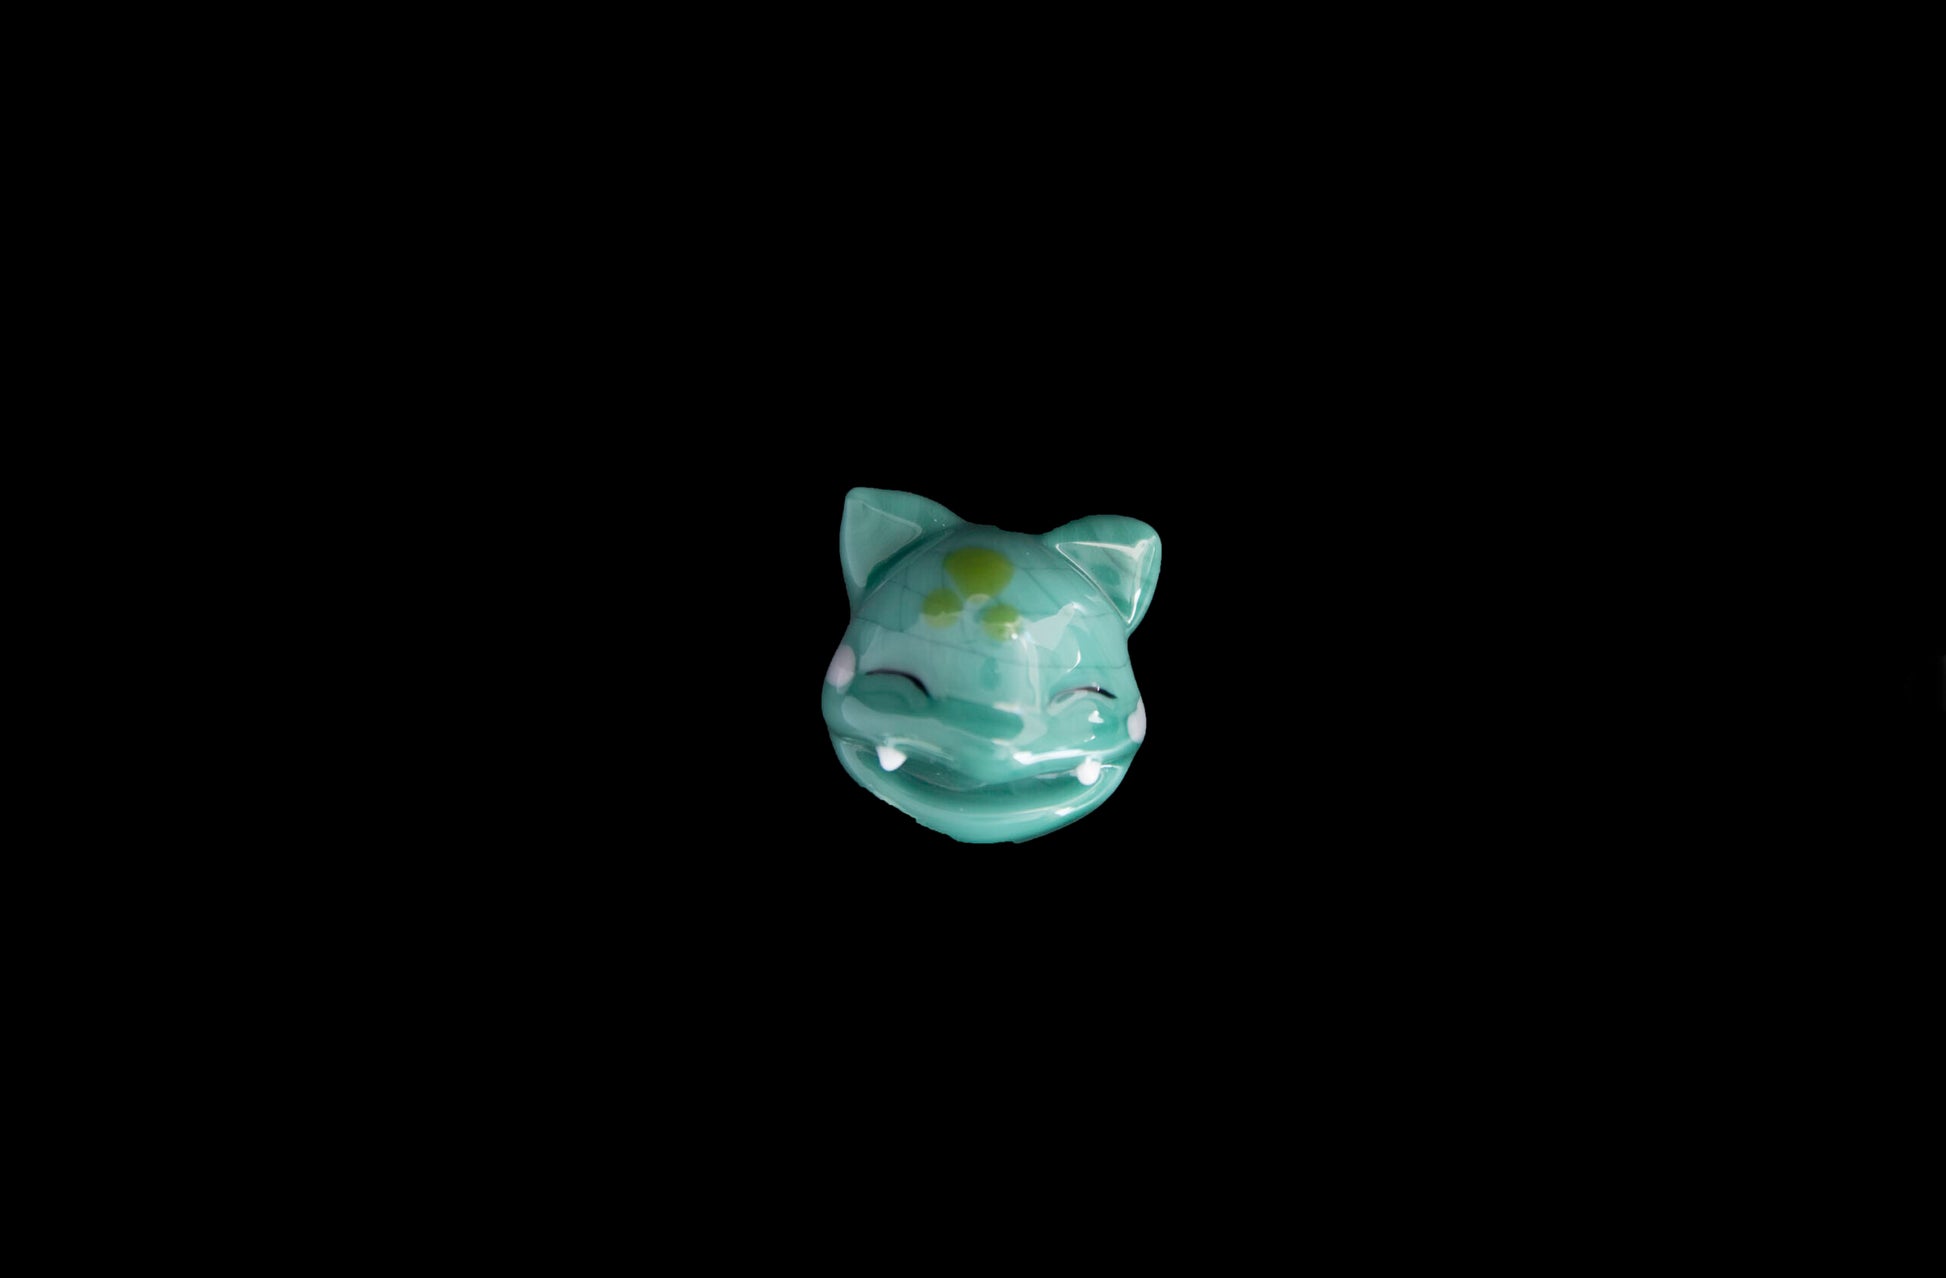 heady glass pendant - Bulbasaur Pokemon Pendant by Saiyan Glass